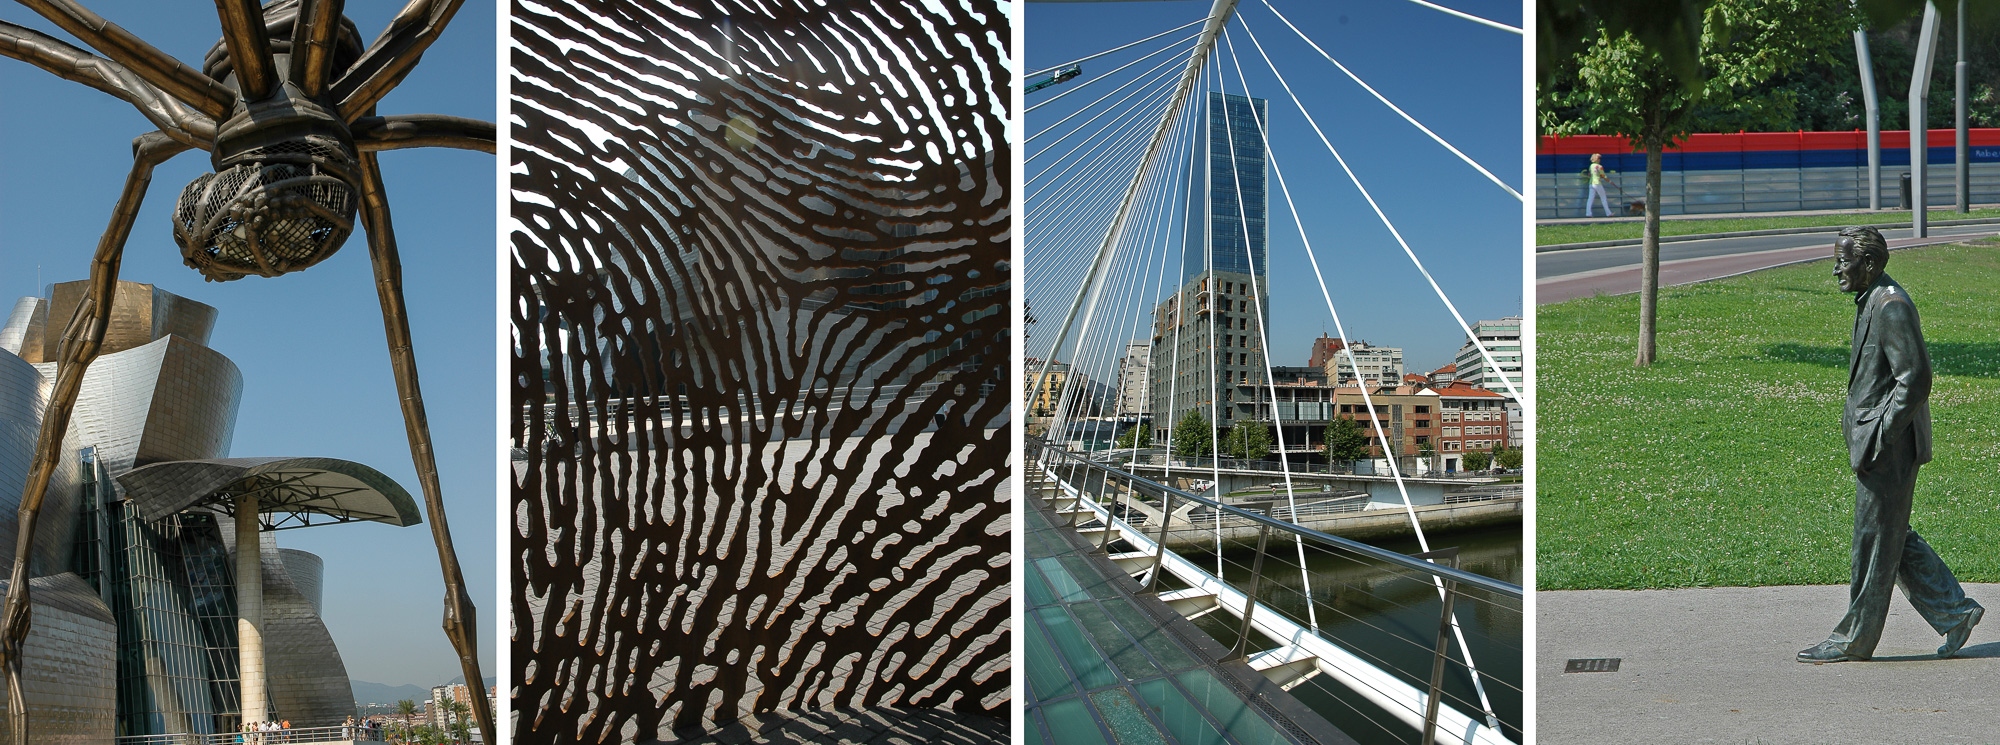 Bilbao, dans la province de Viscaya.  Musée Guggenheim : l'araignée de Louise Bourgeois et d'autres œuvres à l'extérieur du lieu d'expositions..